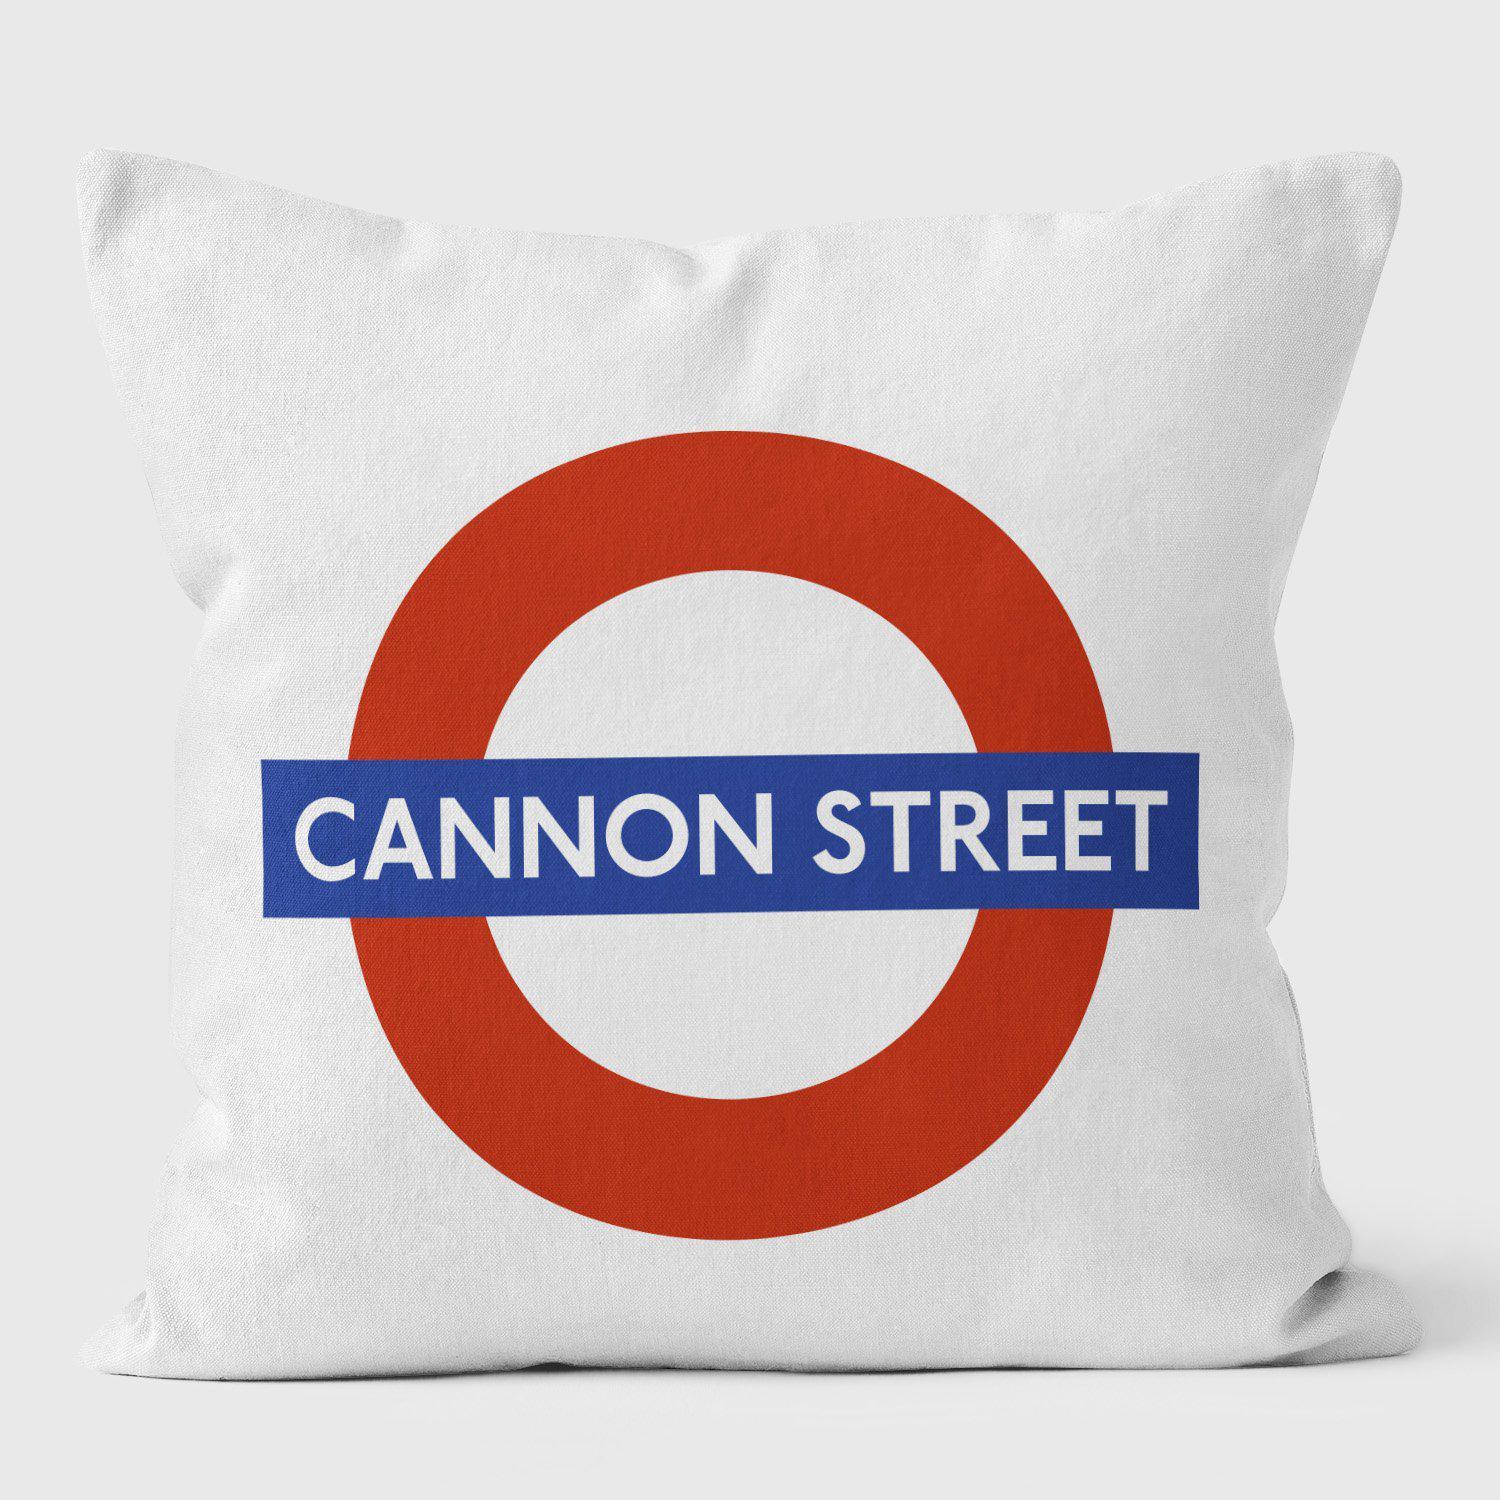 Cannon Street London Underground Tube Station Roundel Cushion - Handmade Cushions UK - WeLoveCushions